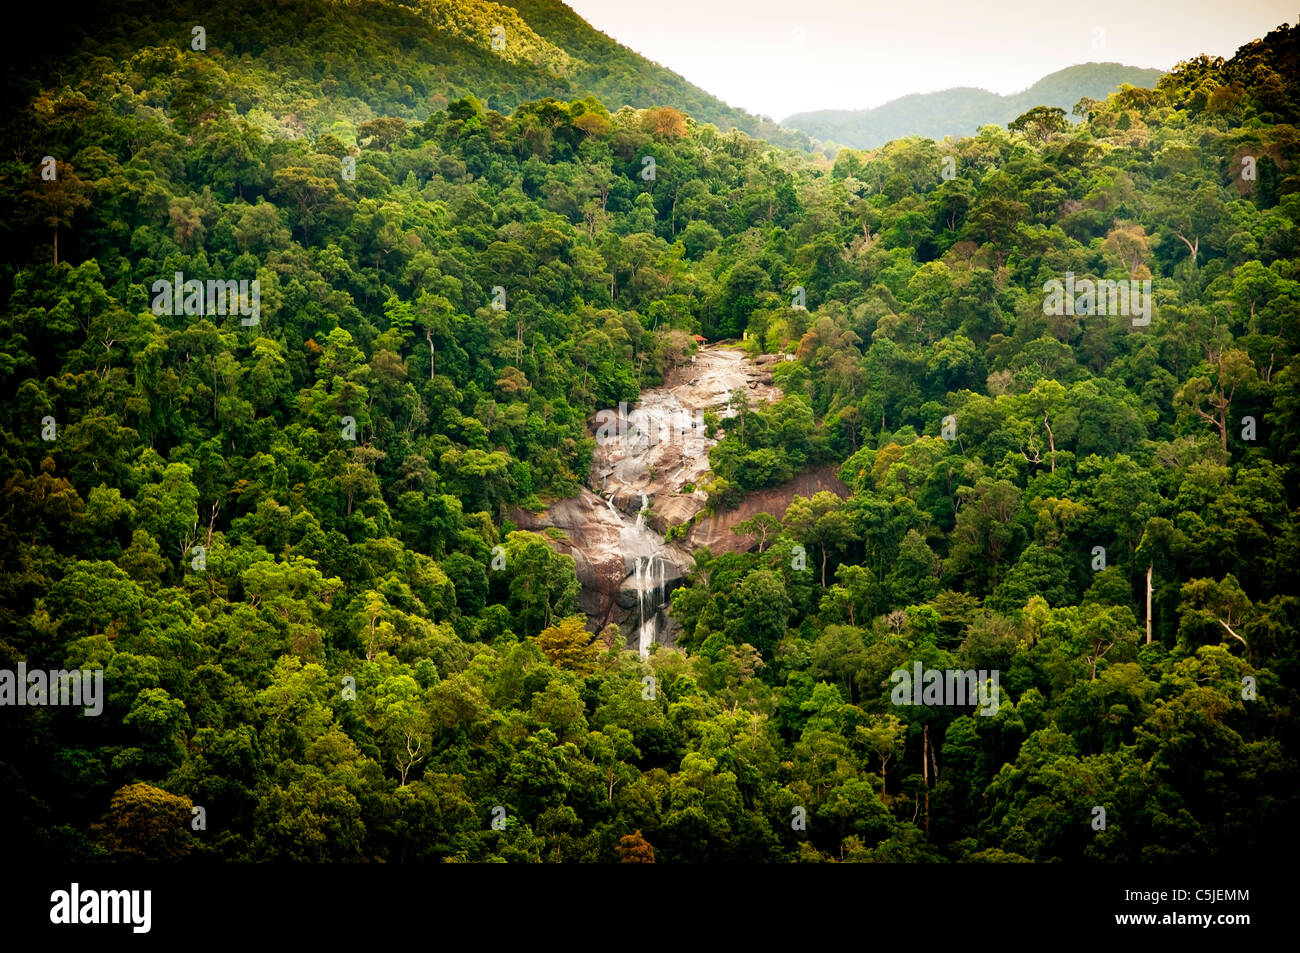 Amazing waterfall révèle à travers jungle vert épais Banque D'Images